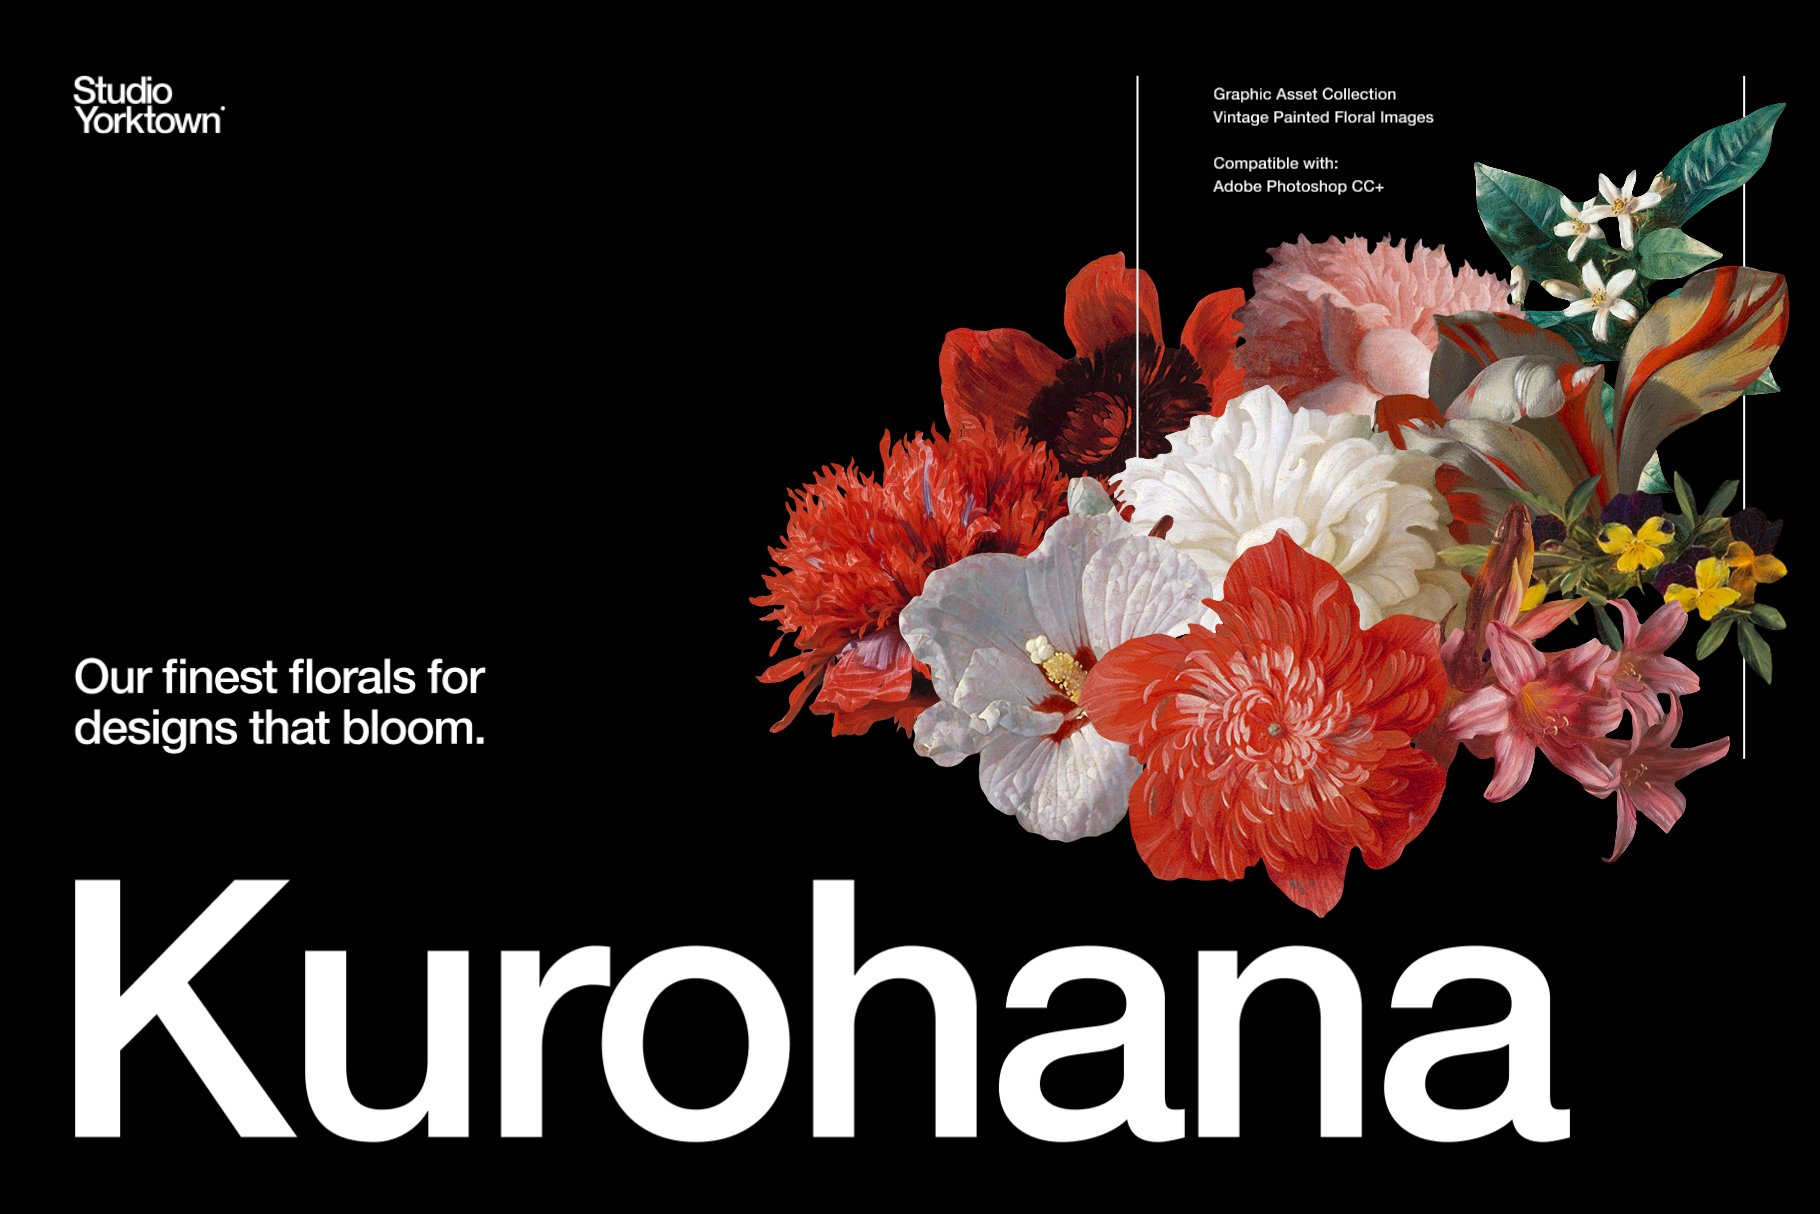 100多种复古花卉古典艺术品图像集合 Kurohana – Moody Florals Collection 图片素材 第1张